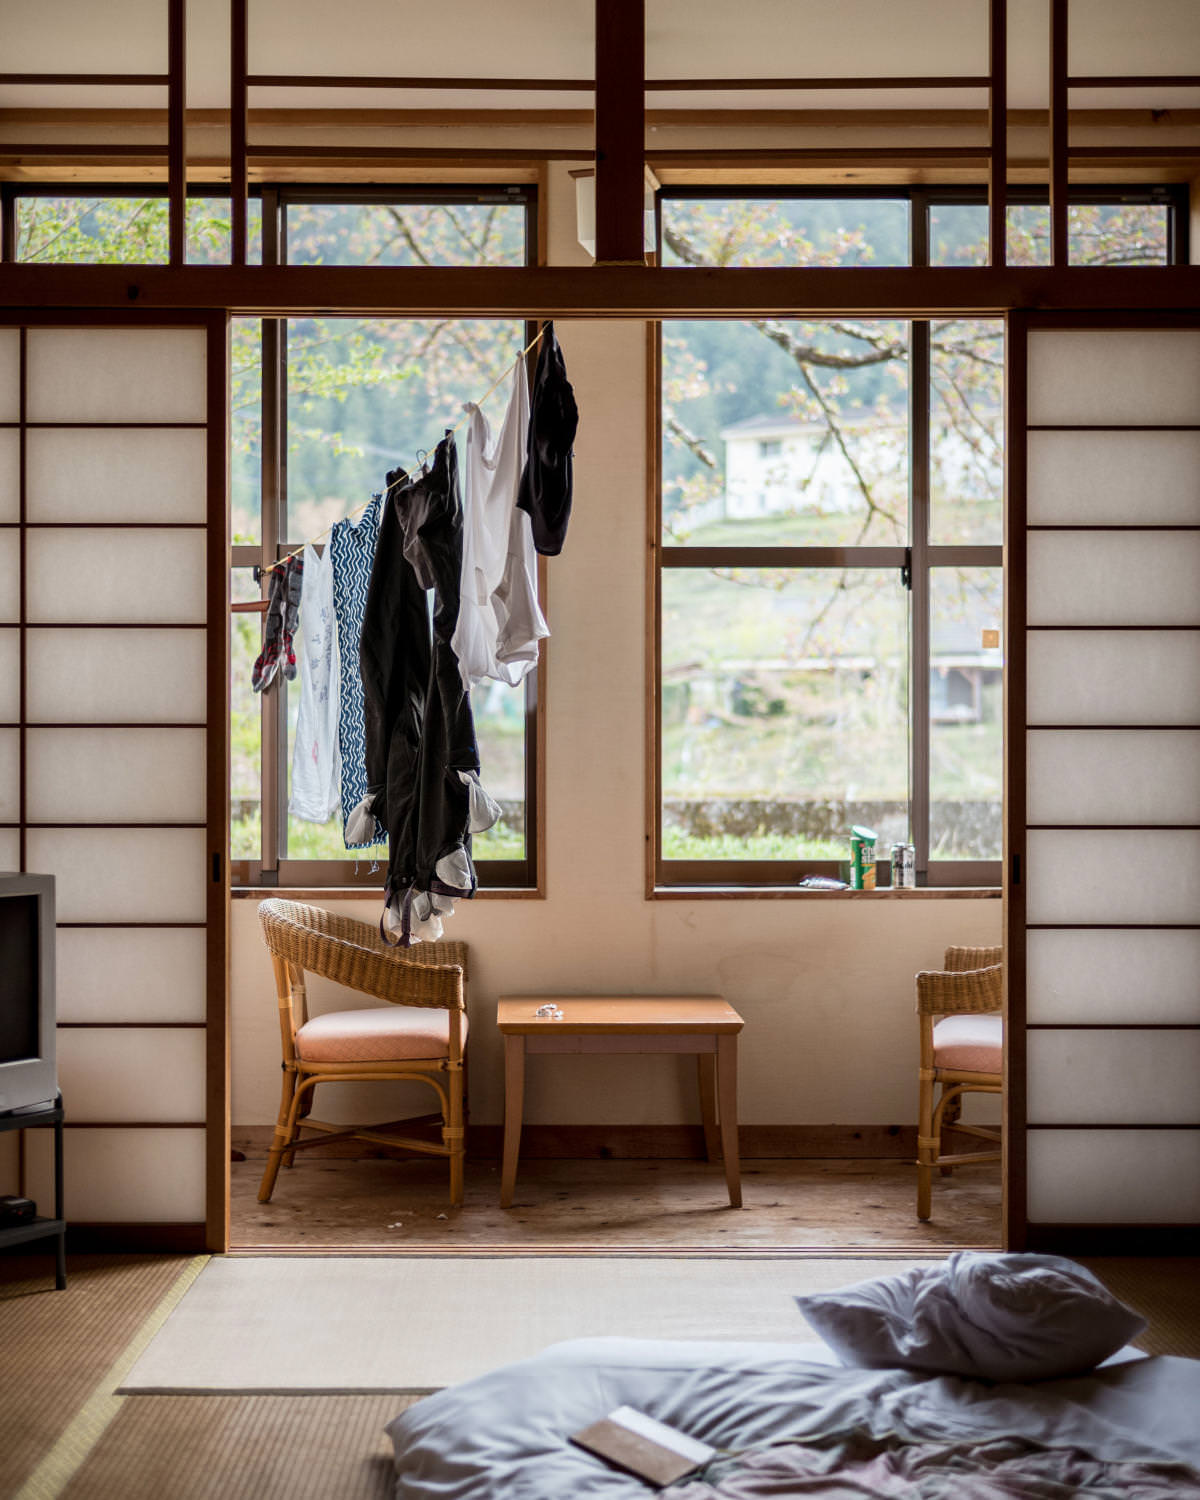 Solor room, laundry, Kumano Kodo